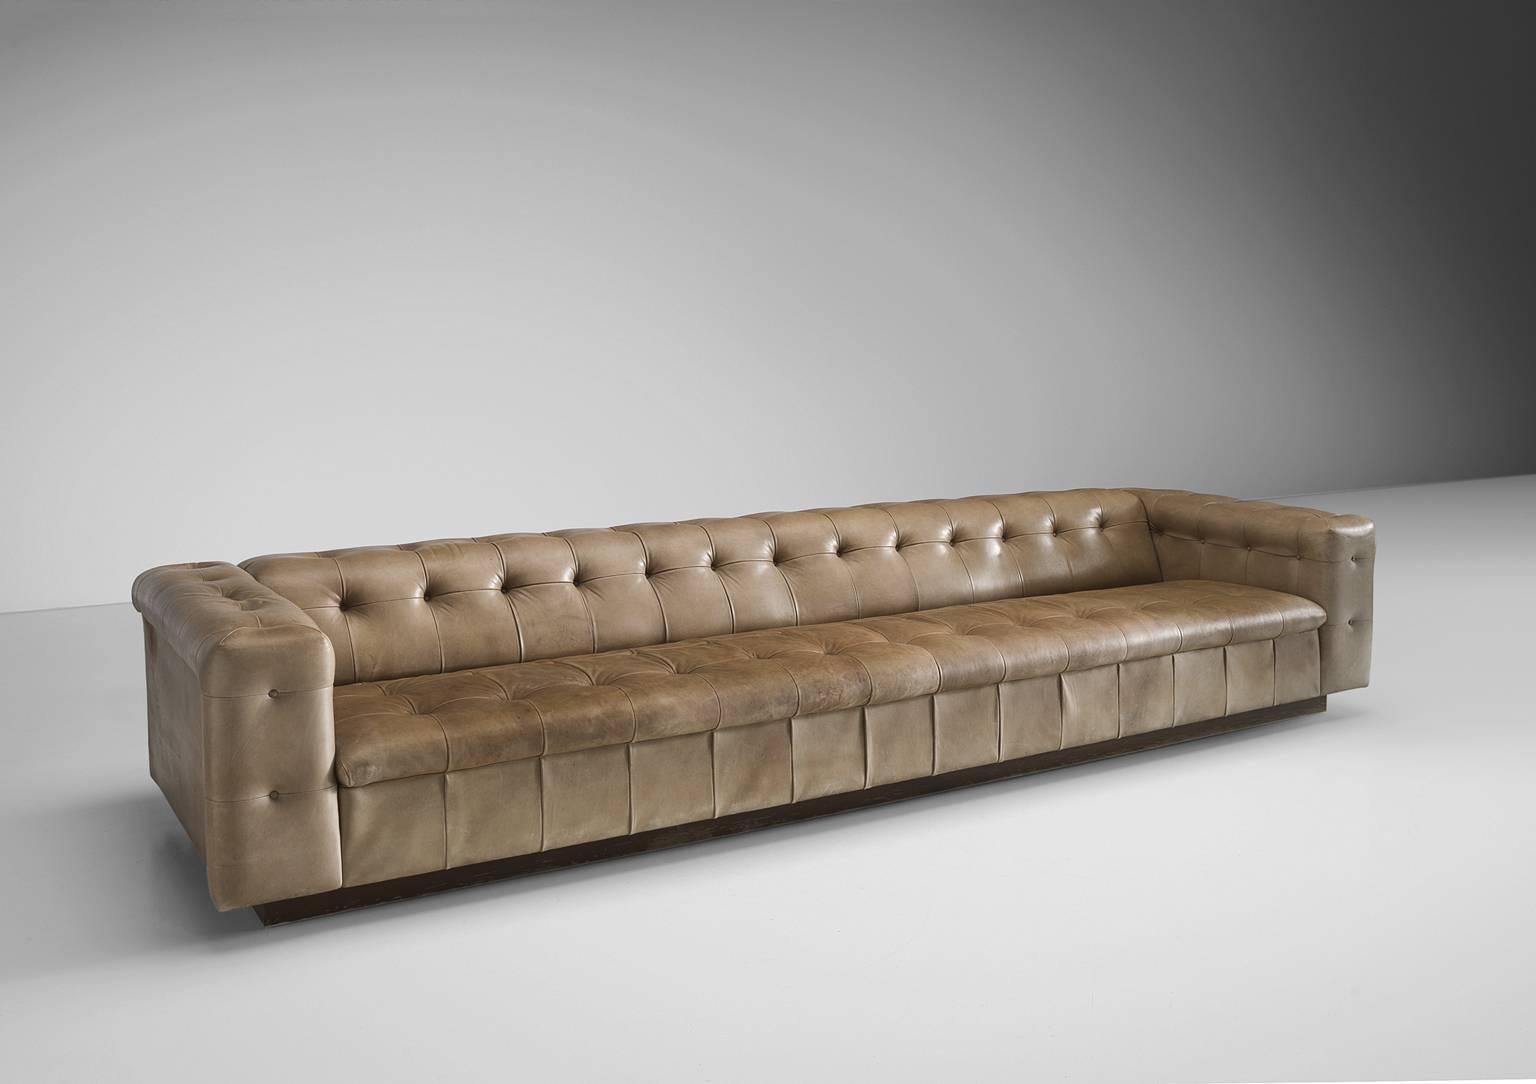 Swiss Grand De Sede Caramel Leather Sofa by Robert Haussmann